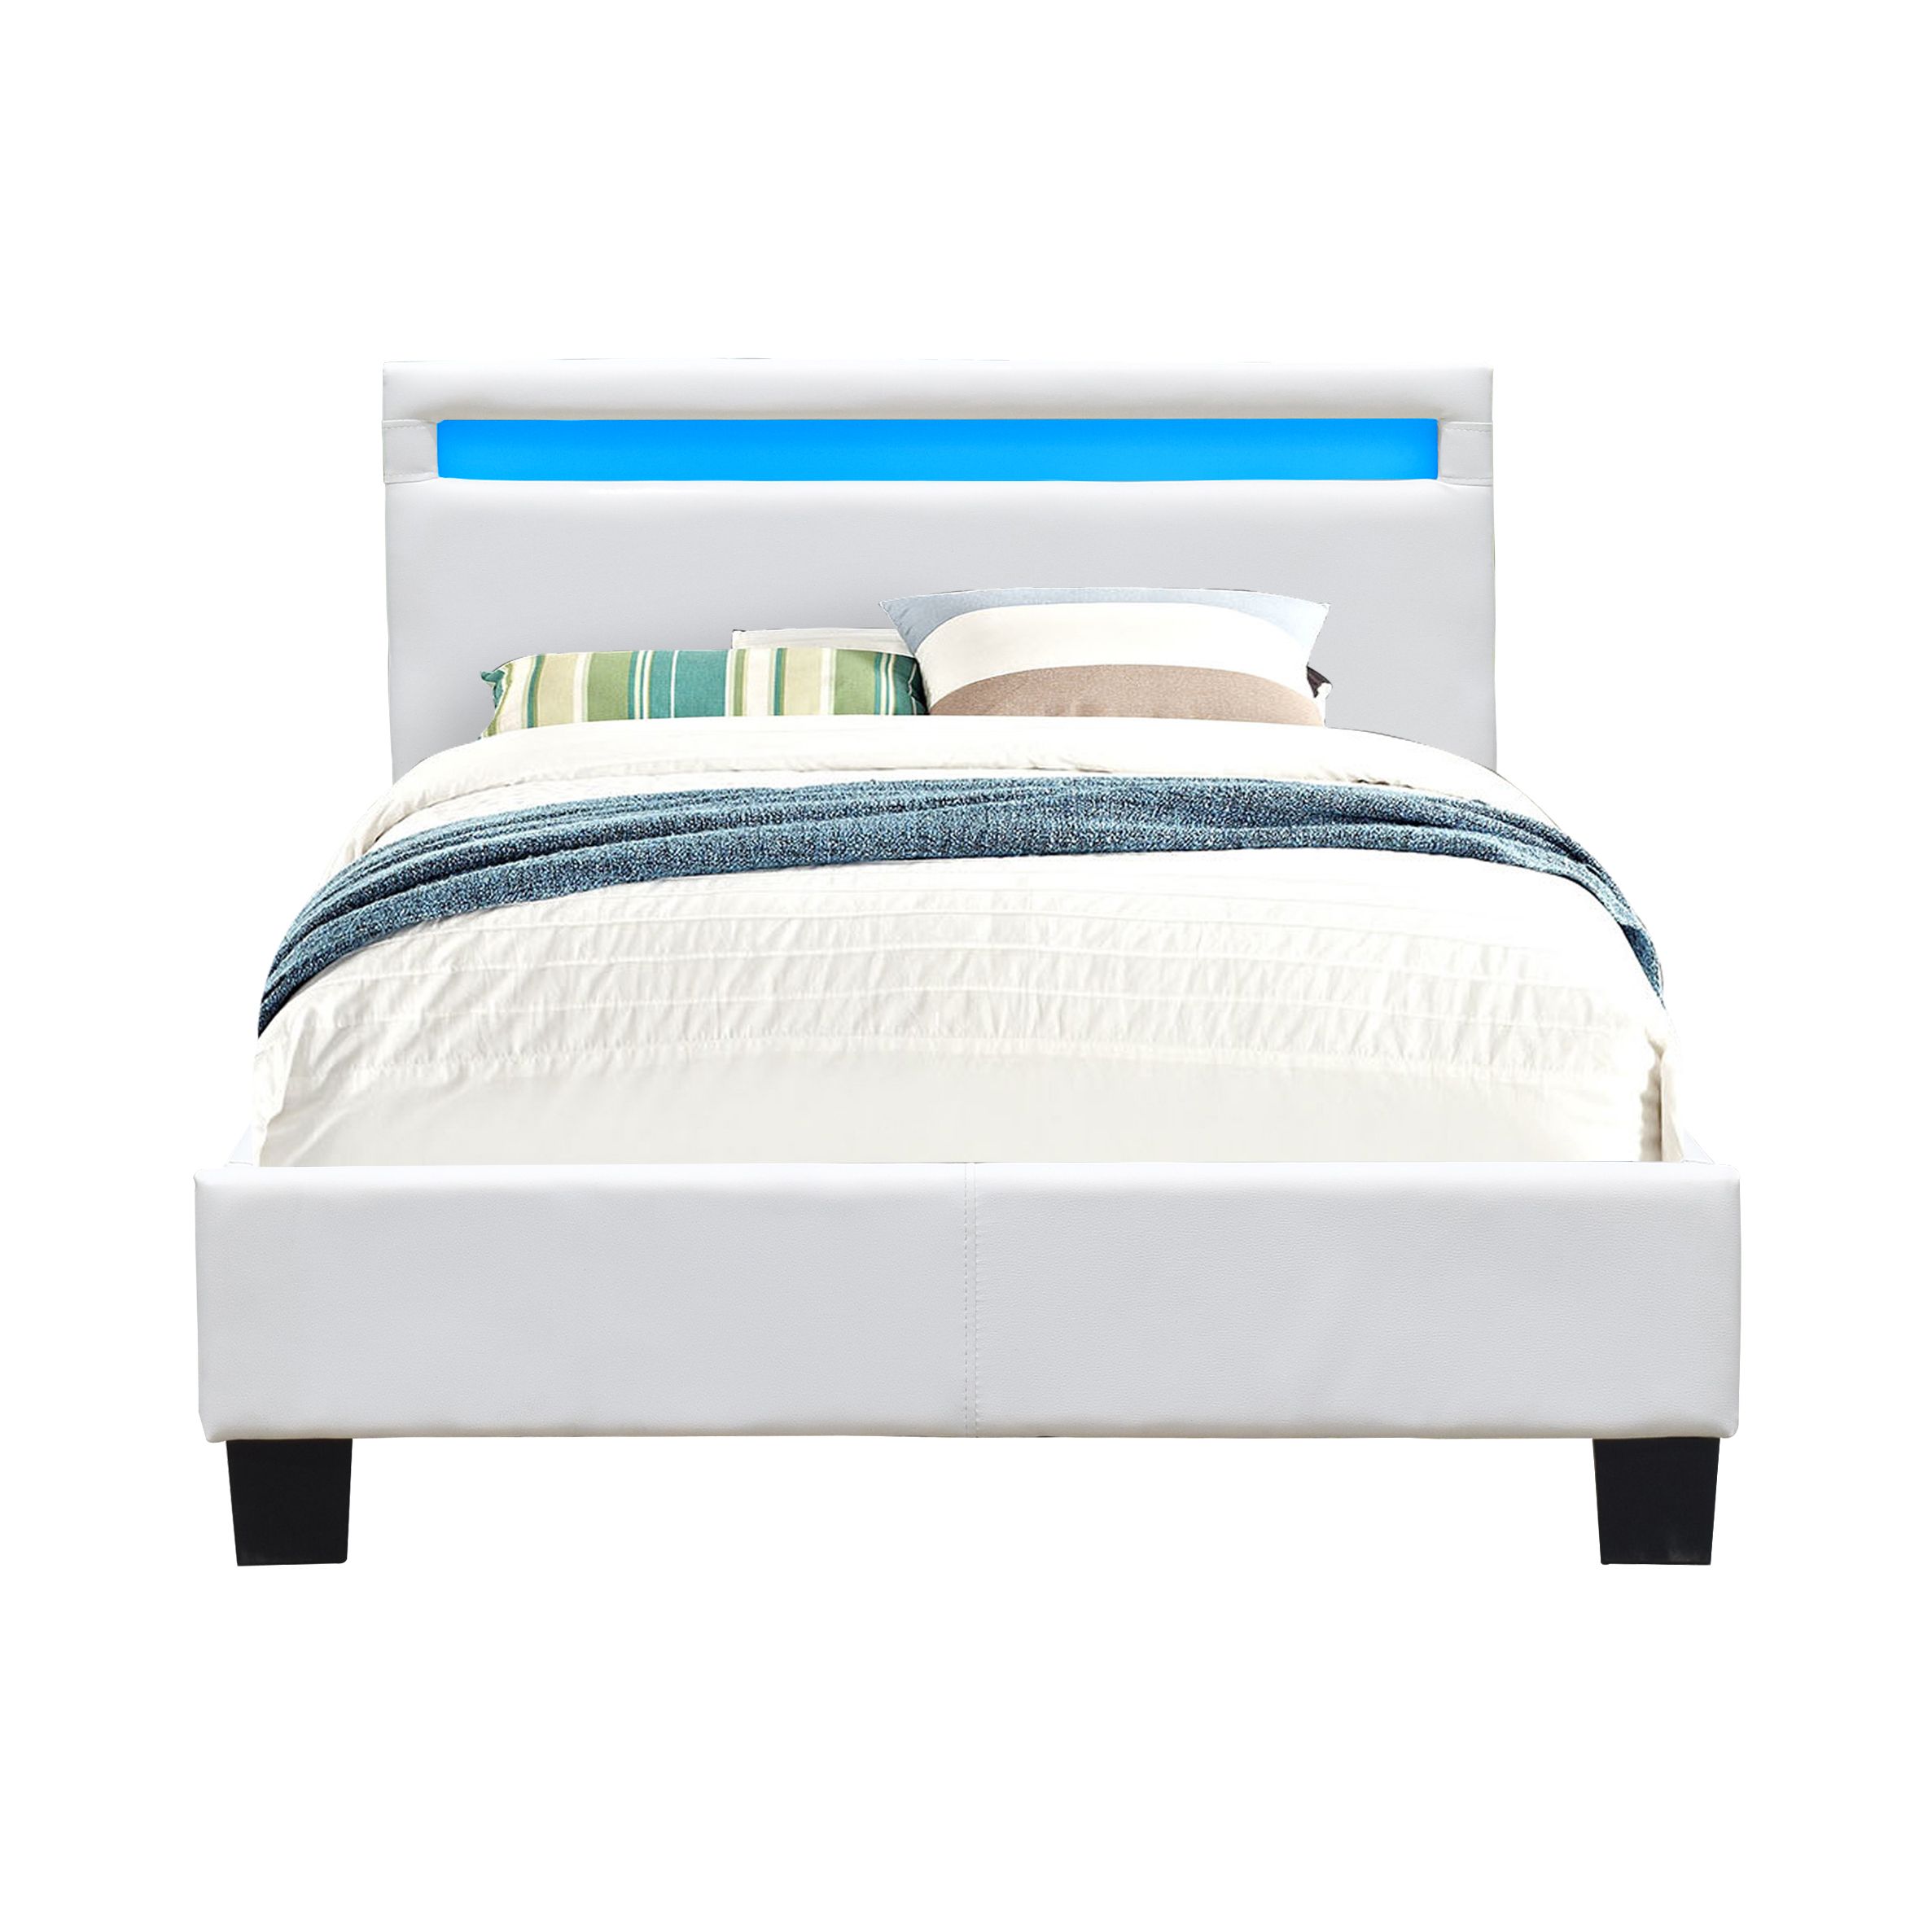 lit simple en bois - literie julien - solide et confortable - 90x190 cm - blanc